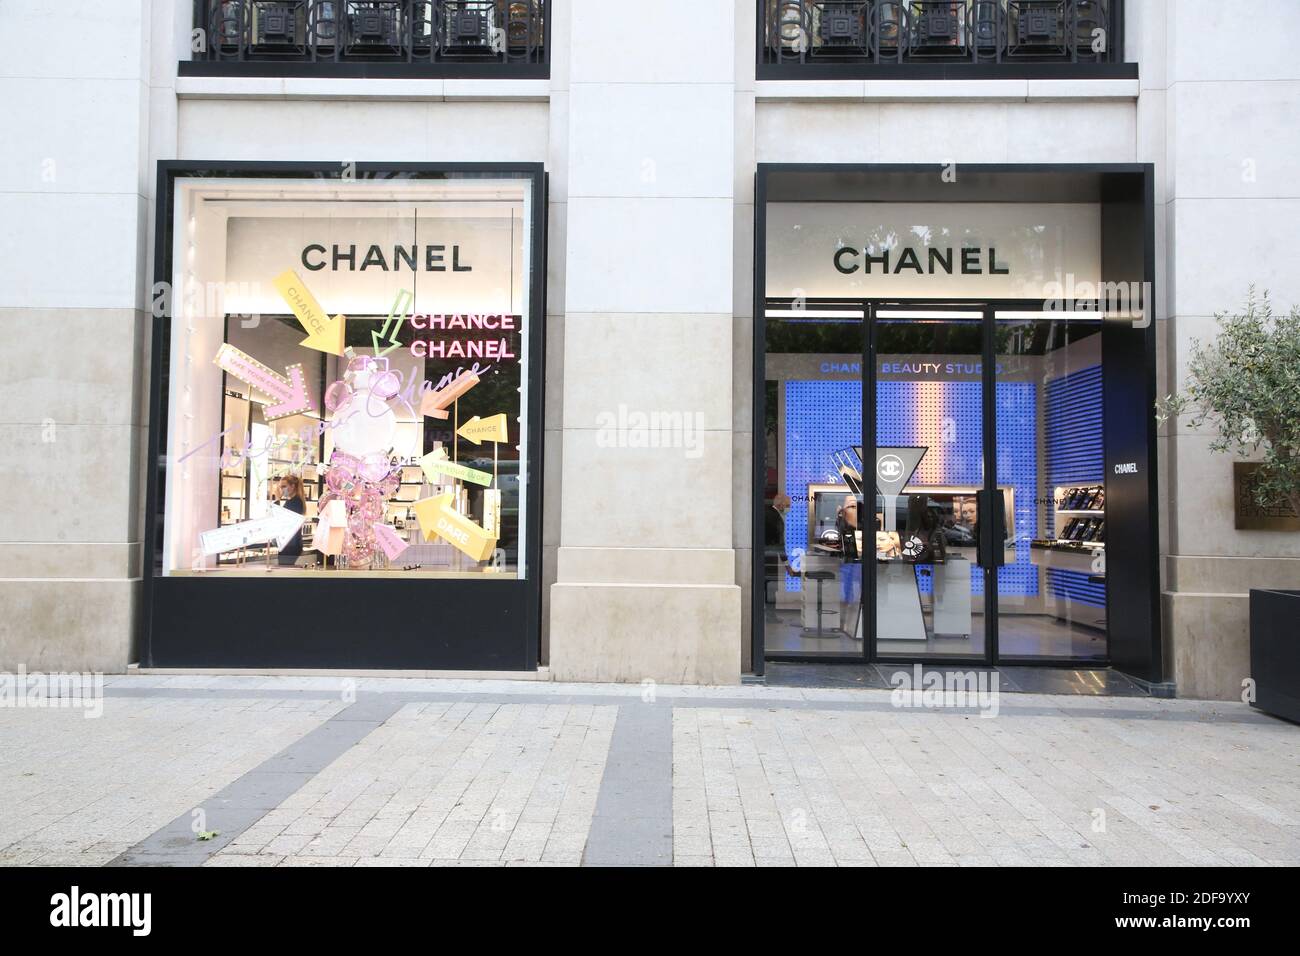 Los clientes que llevan máscaras protectoras paseando cerca de la tienda  Chanel en la avenida Champs Elysee el 11 de mayo de 2020 en París, Francia.  Francia comenzó una reducción gradual de